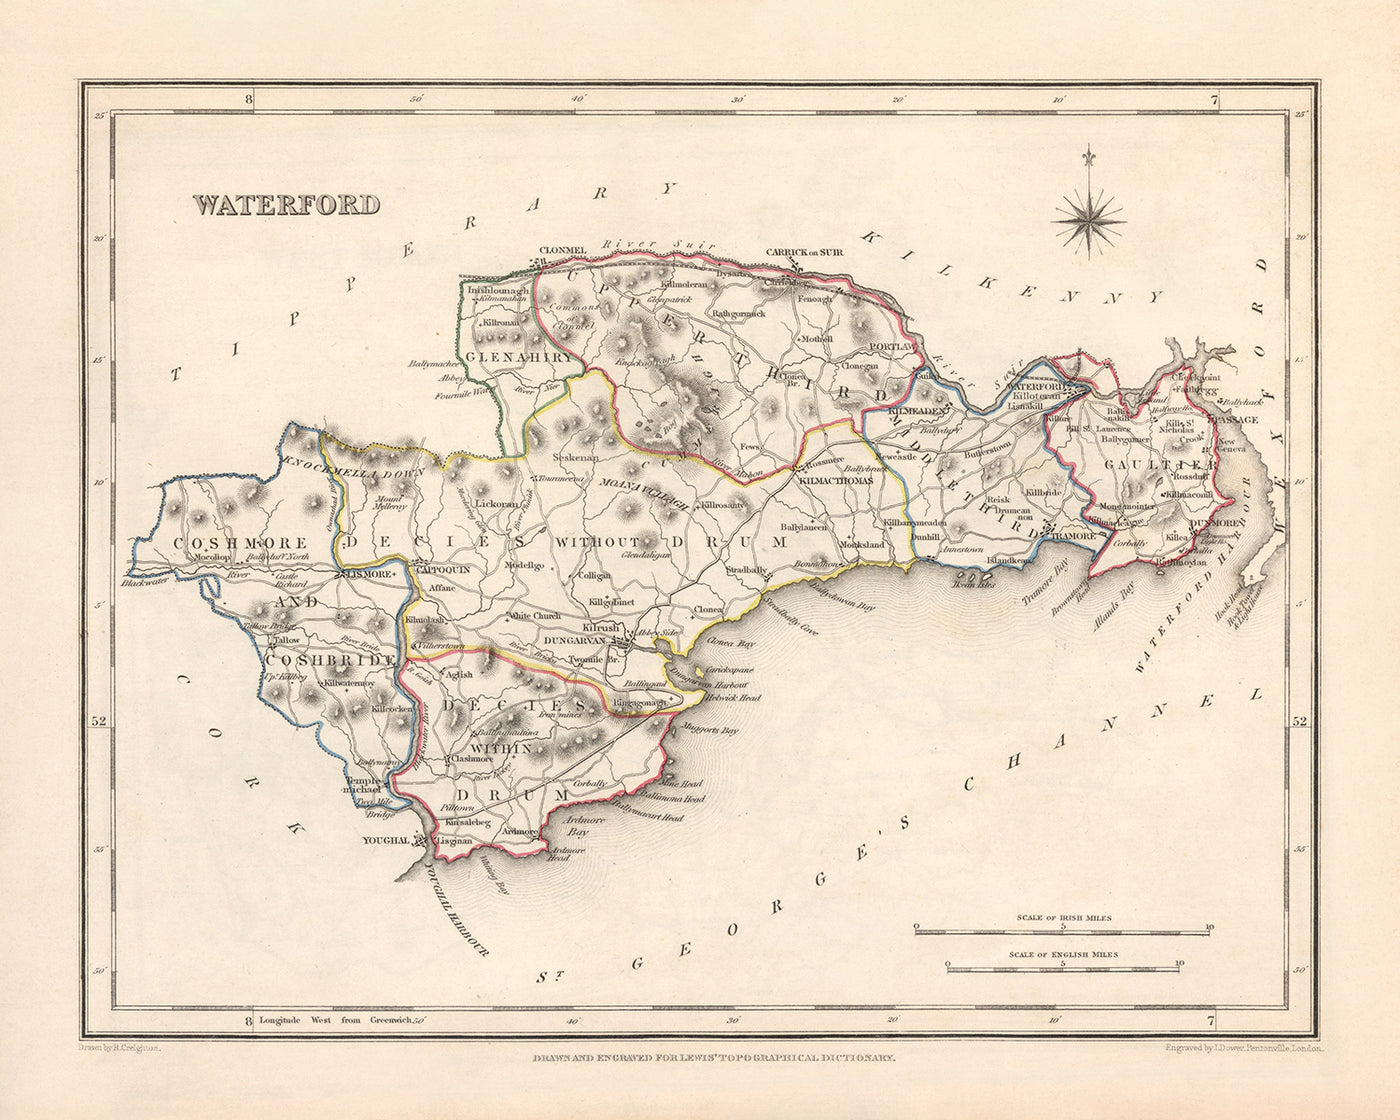 Mapa antiguo del condado de Waterford por Samuel Lewis, 1844: Dungarvan, Lismore, Cappoquin, Tramore, Dunmore East